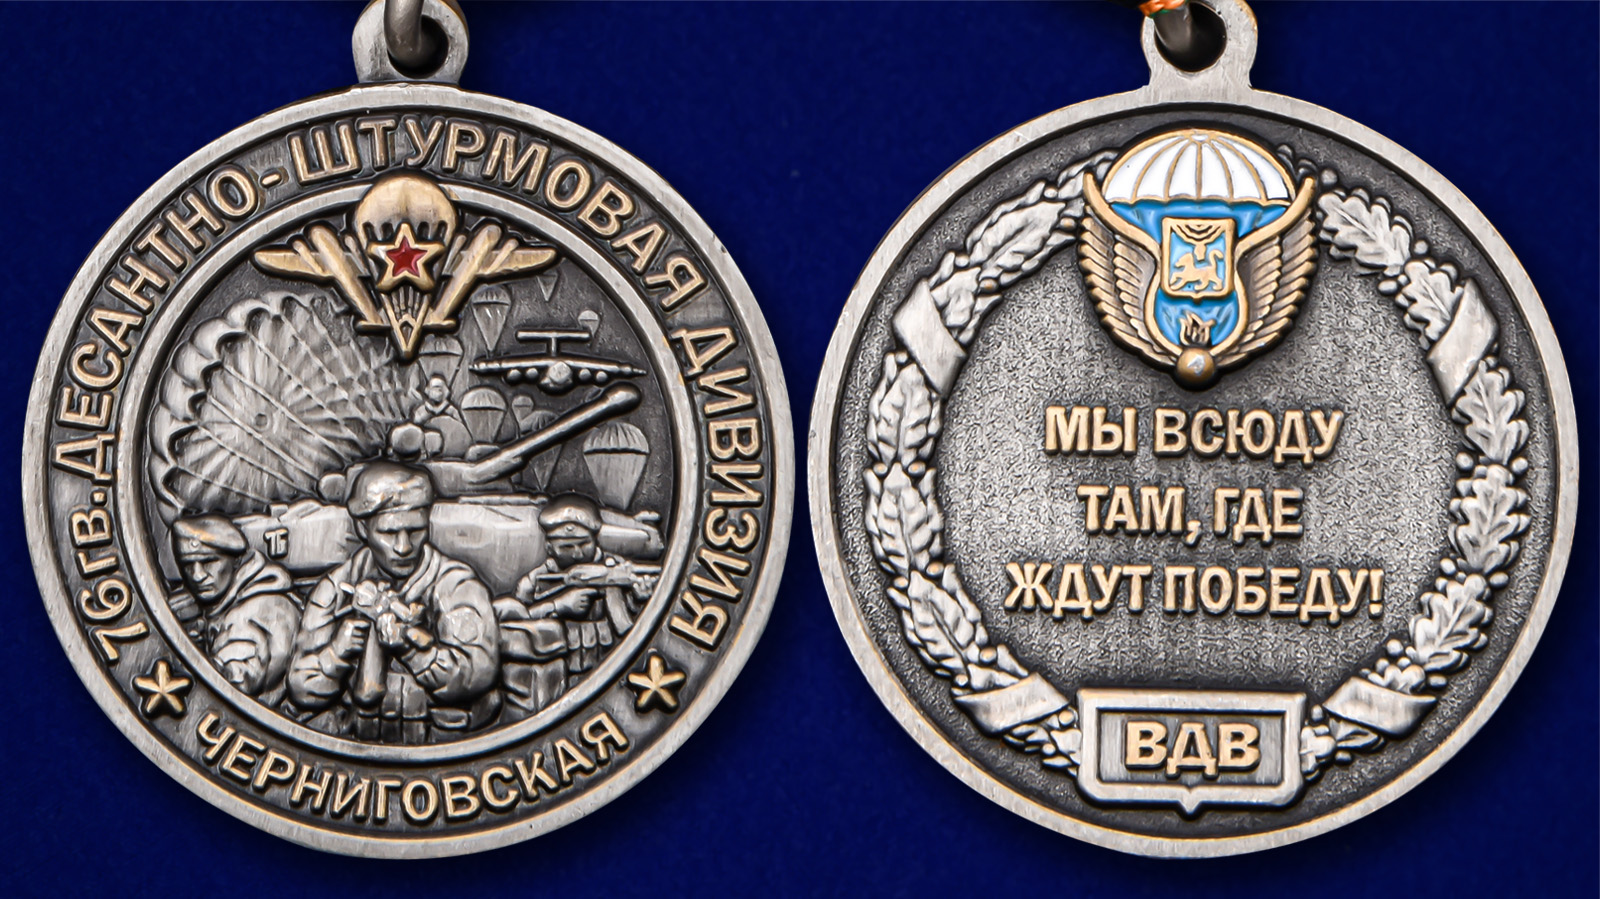 Описание медали "76-я гв. Десантно-штурмовая дивизия" - аверс и реверс